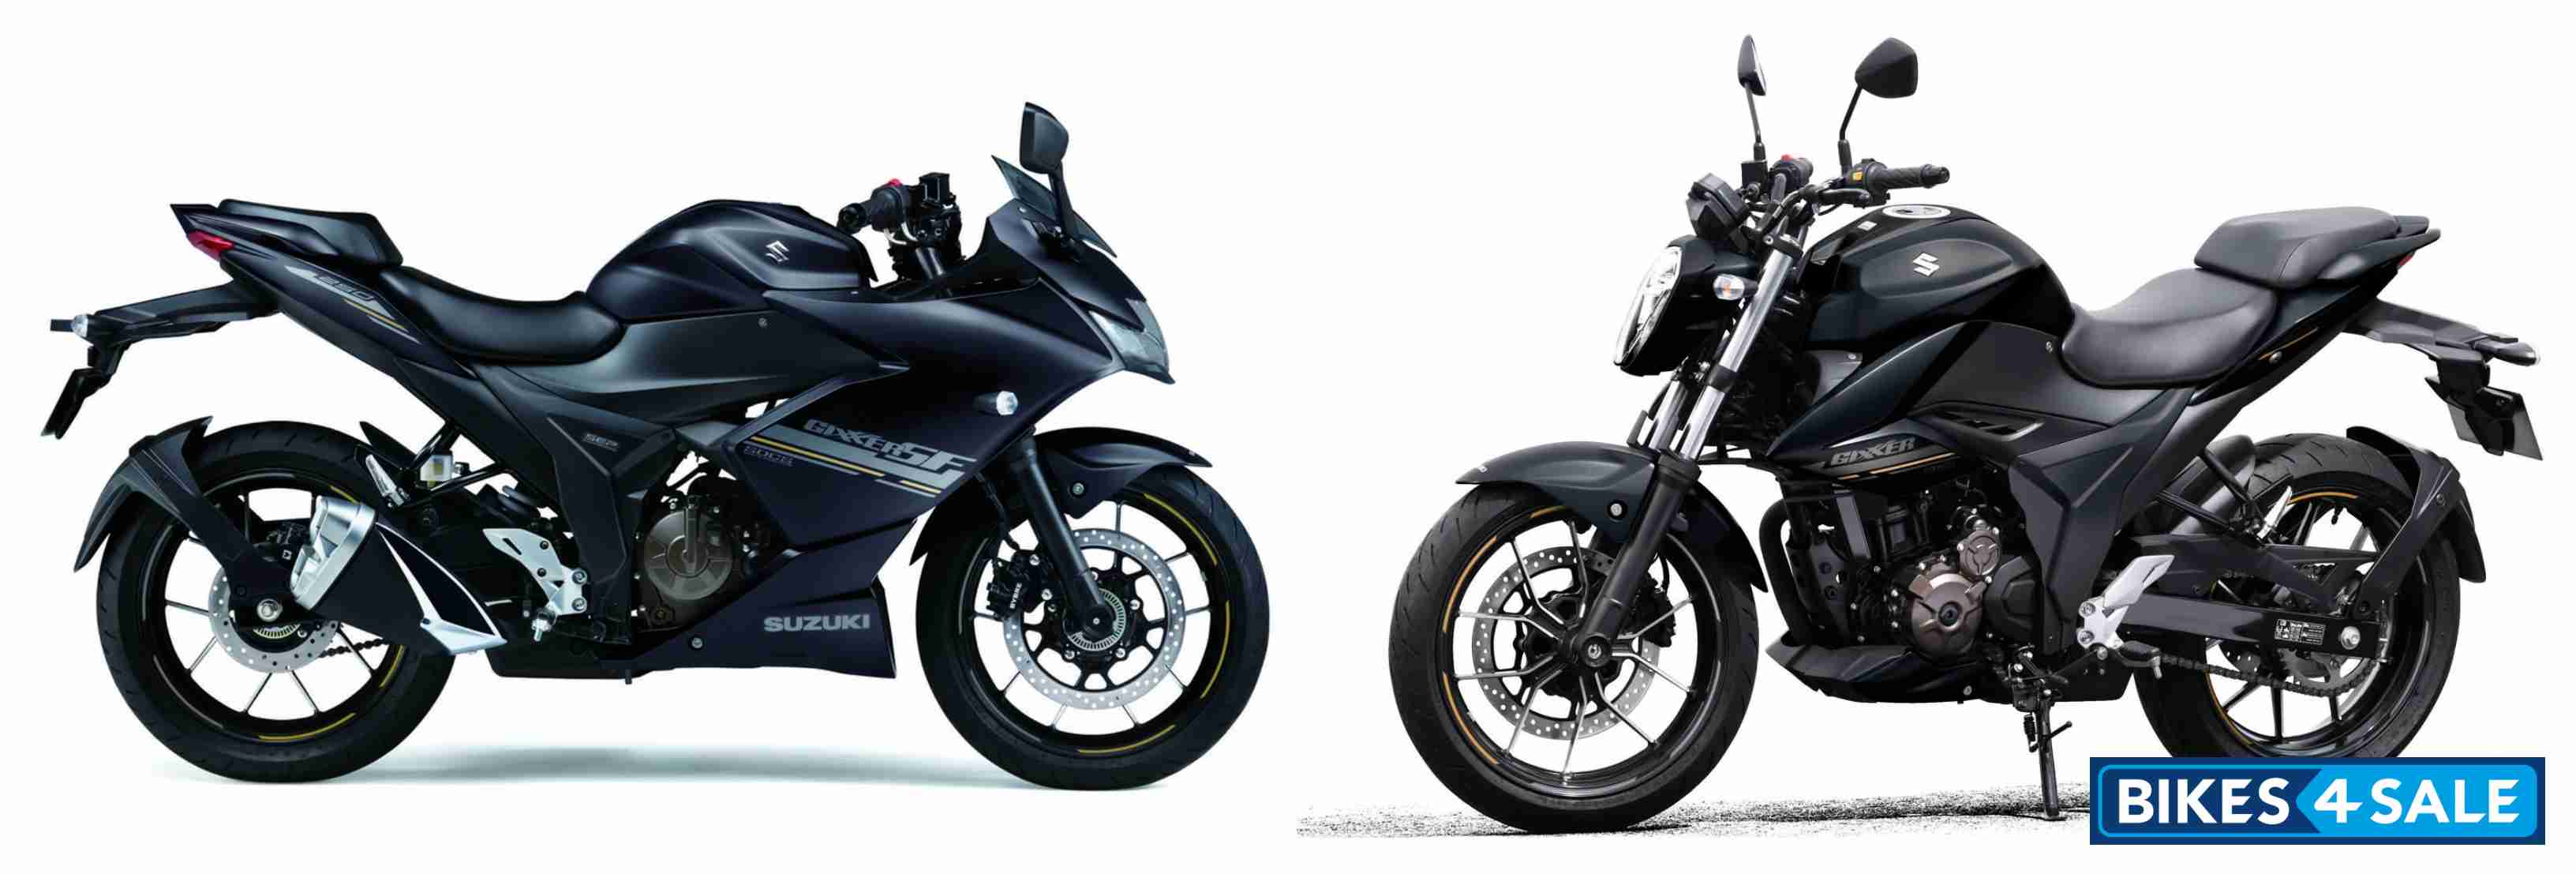 Suzuki Unveils 2023 Gixxer 250 And Gixxer Sf 250 Models In Australia